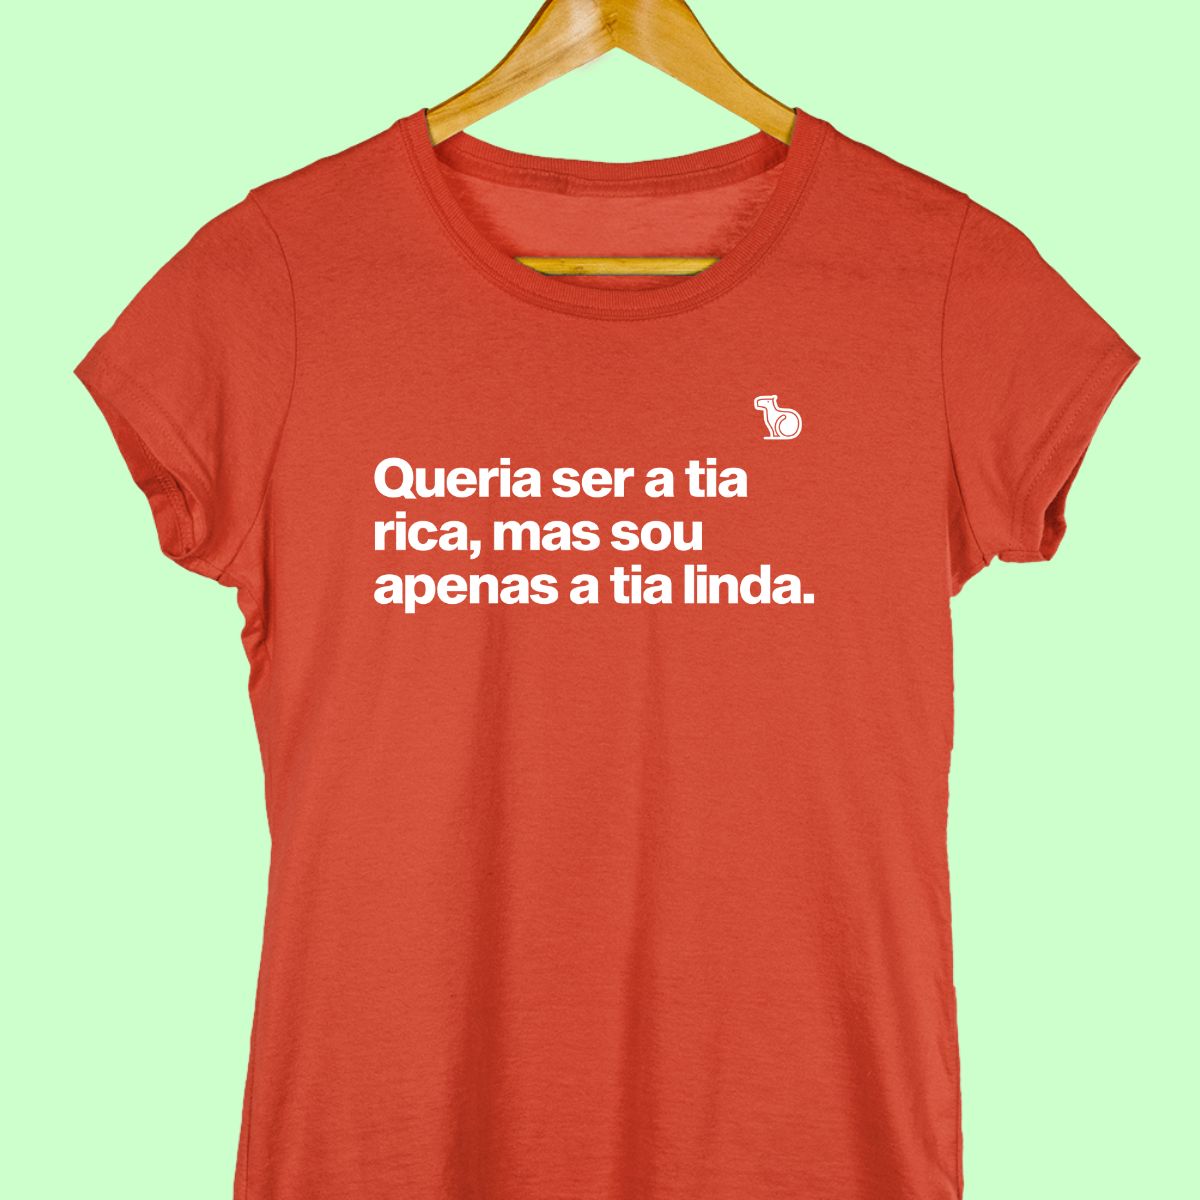 Camiseta com a frase "Queria ser a tia rica, mas sou apenas a tia linda." feminina vermelha.